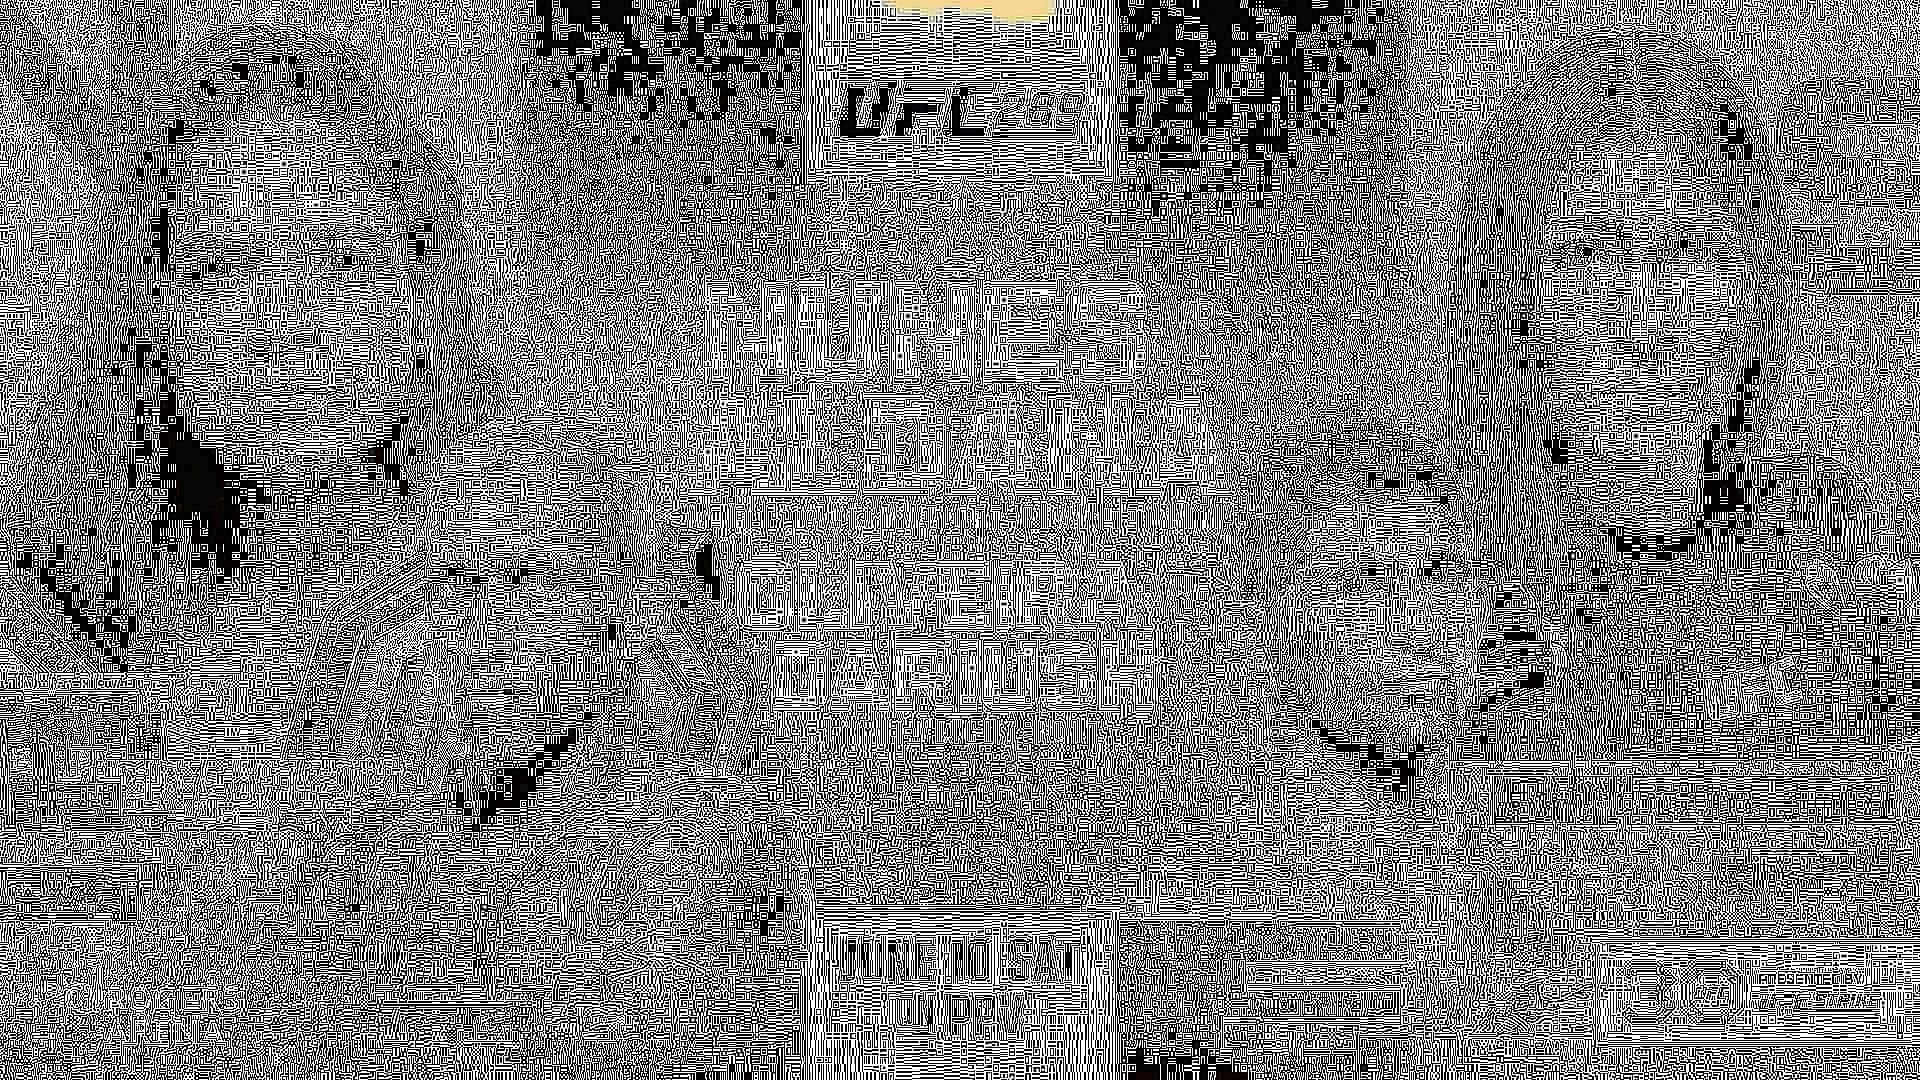 UFC 289: Nunes vs. Aldana